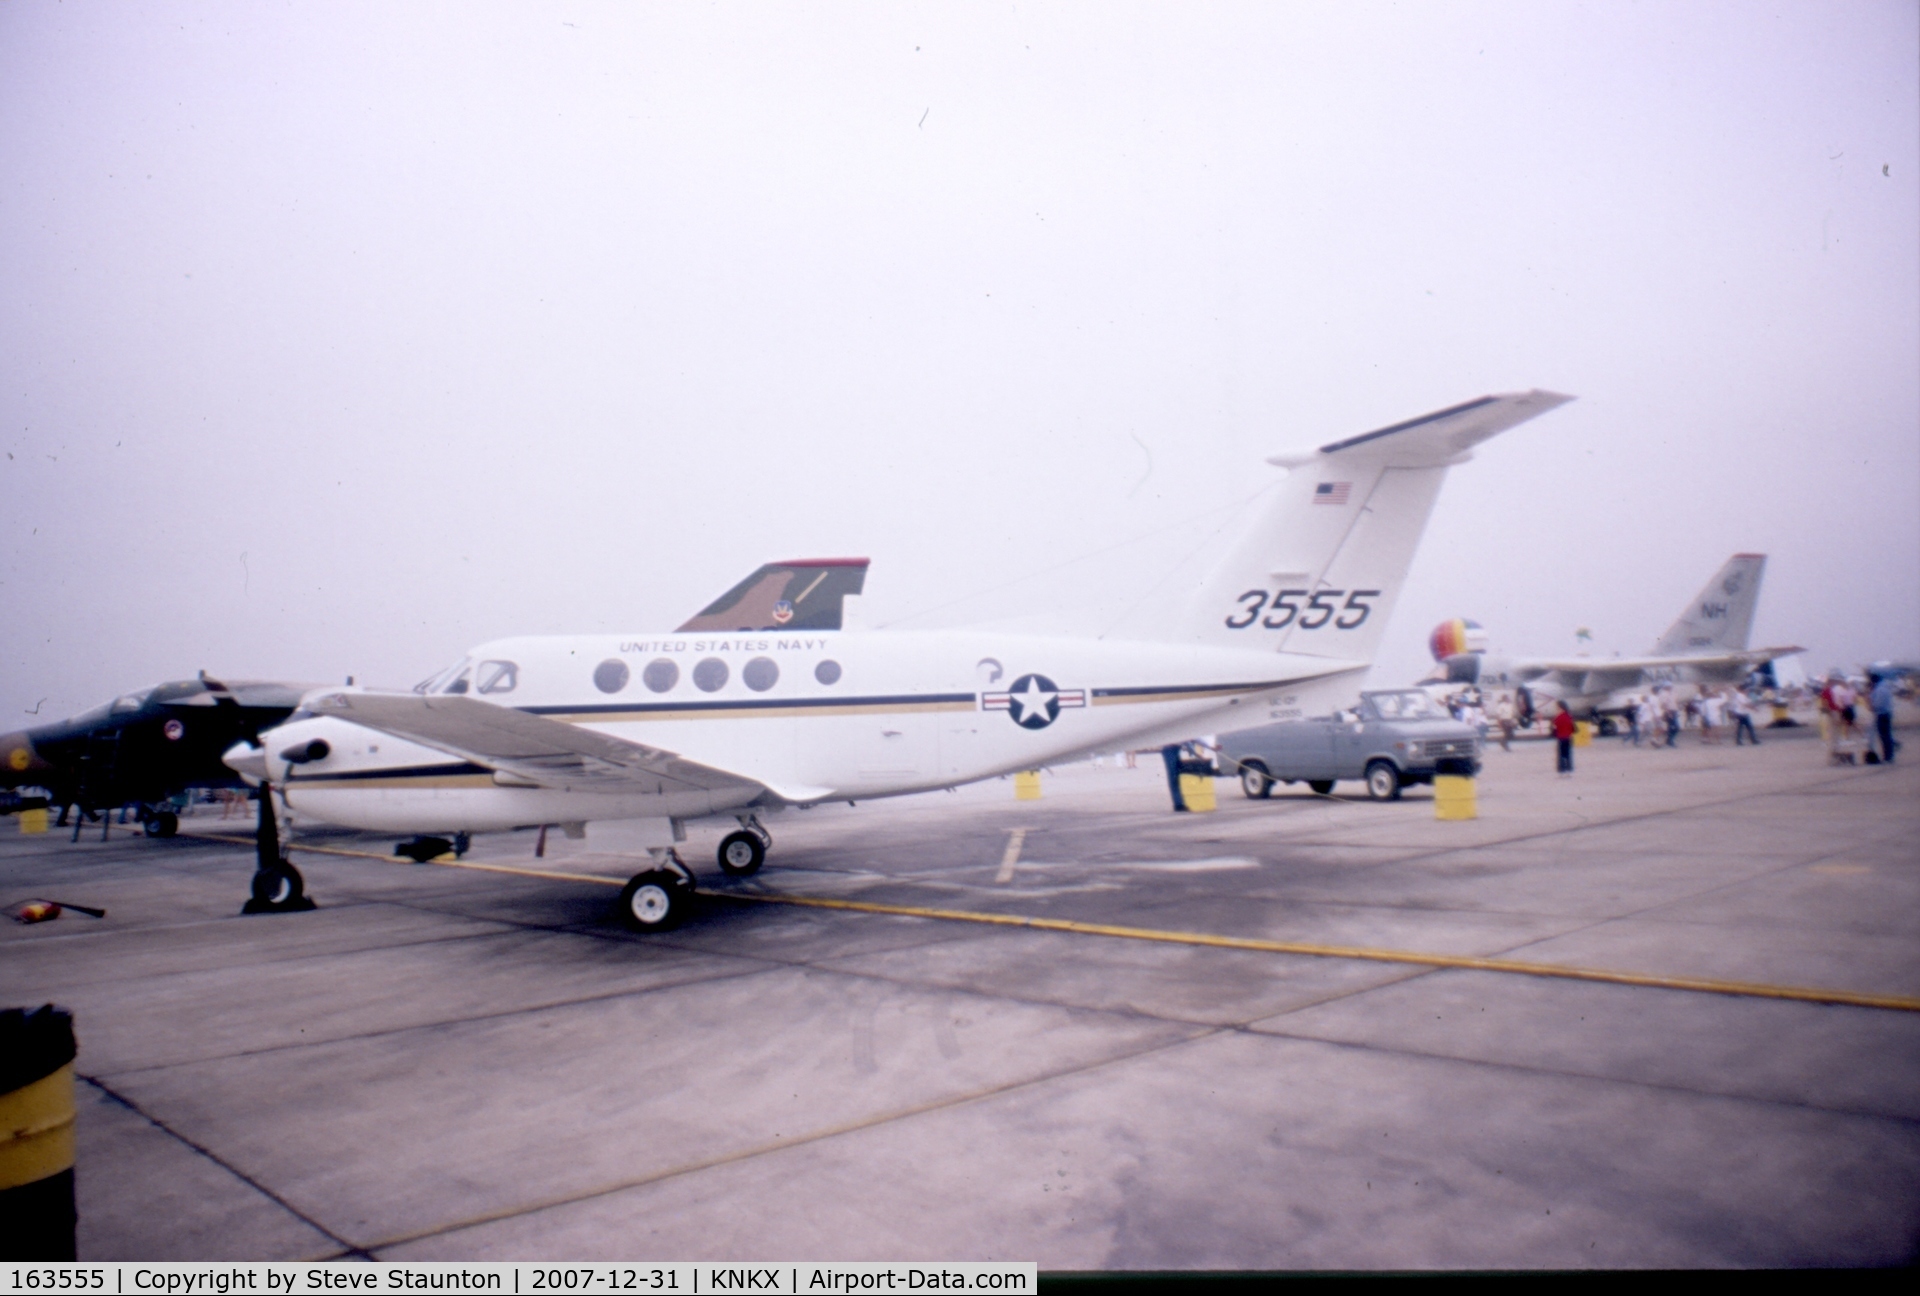 163555, Beech UC-12F Huron C/N BU-03, Taken at NAS Miramar Airshow in 1988 (scan of a slide)